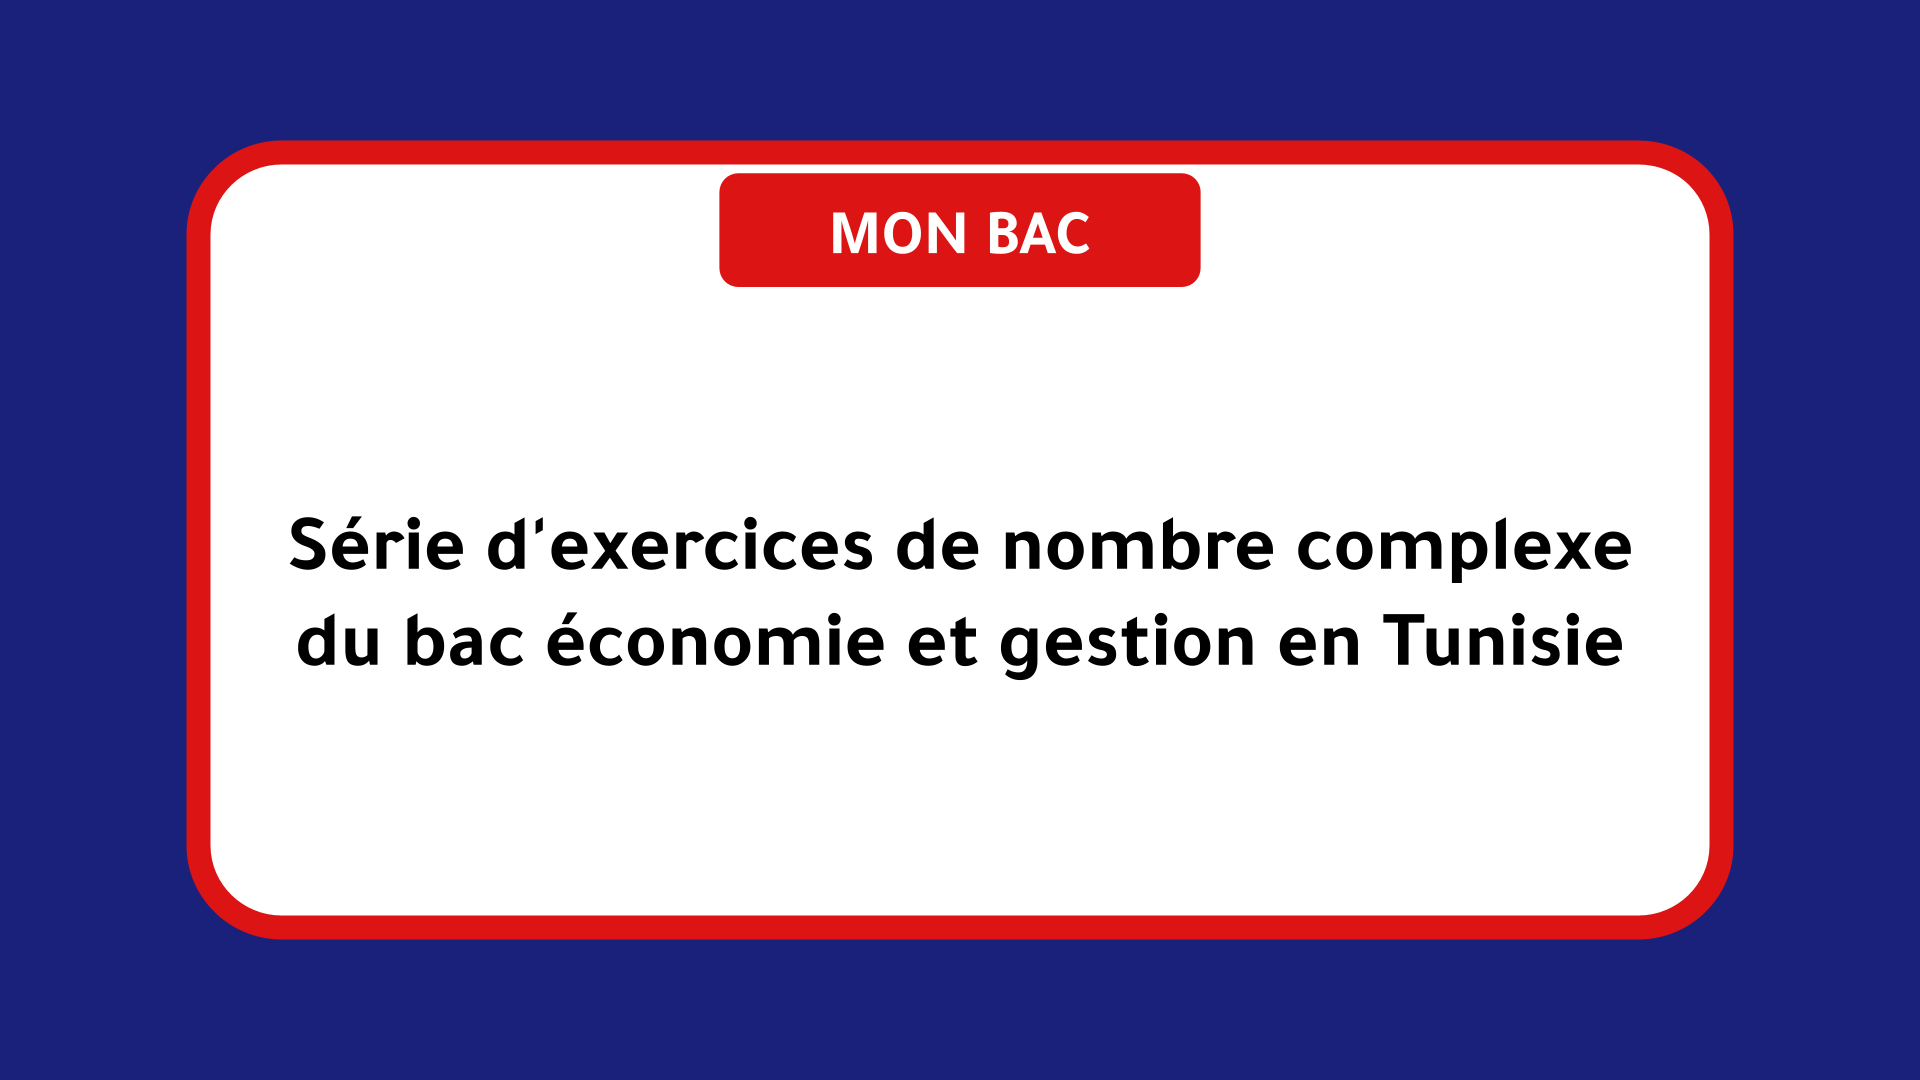 Série d'exercices de nombre complexe bac économie et gestion Tunisie